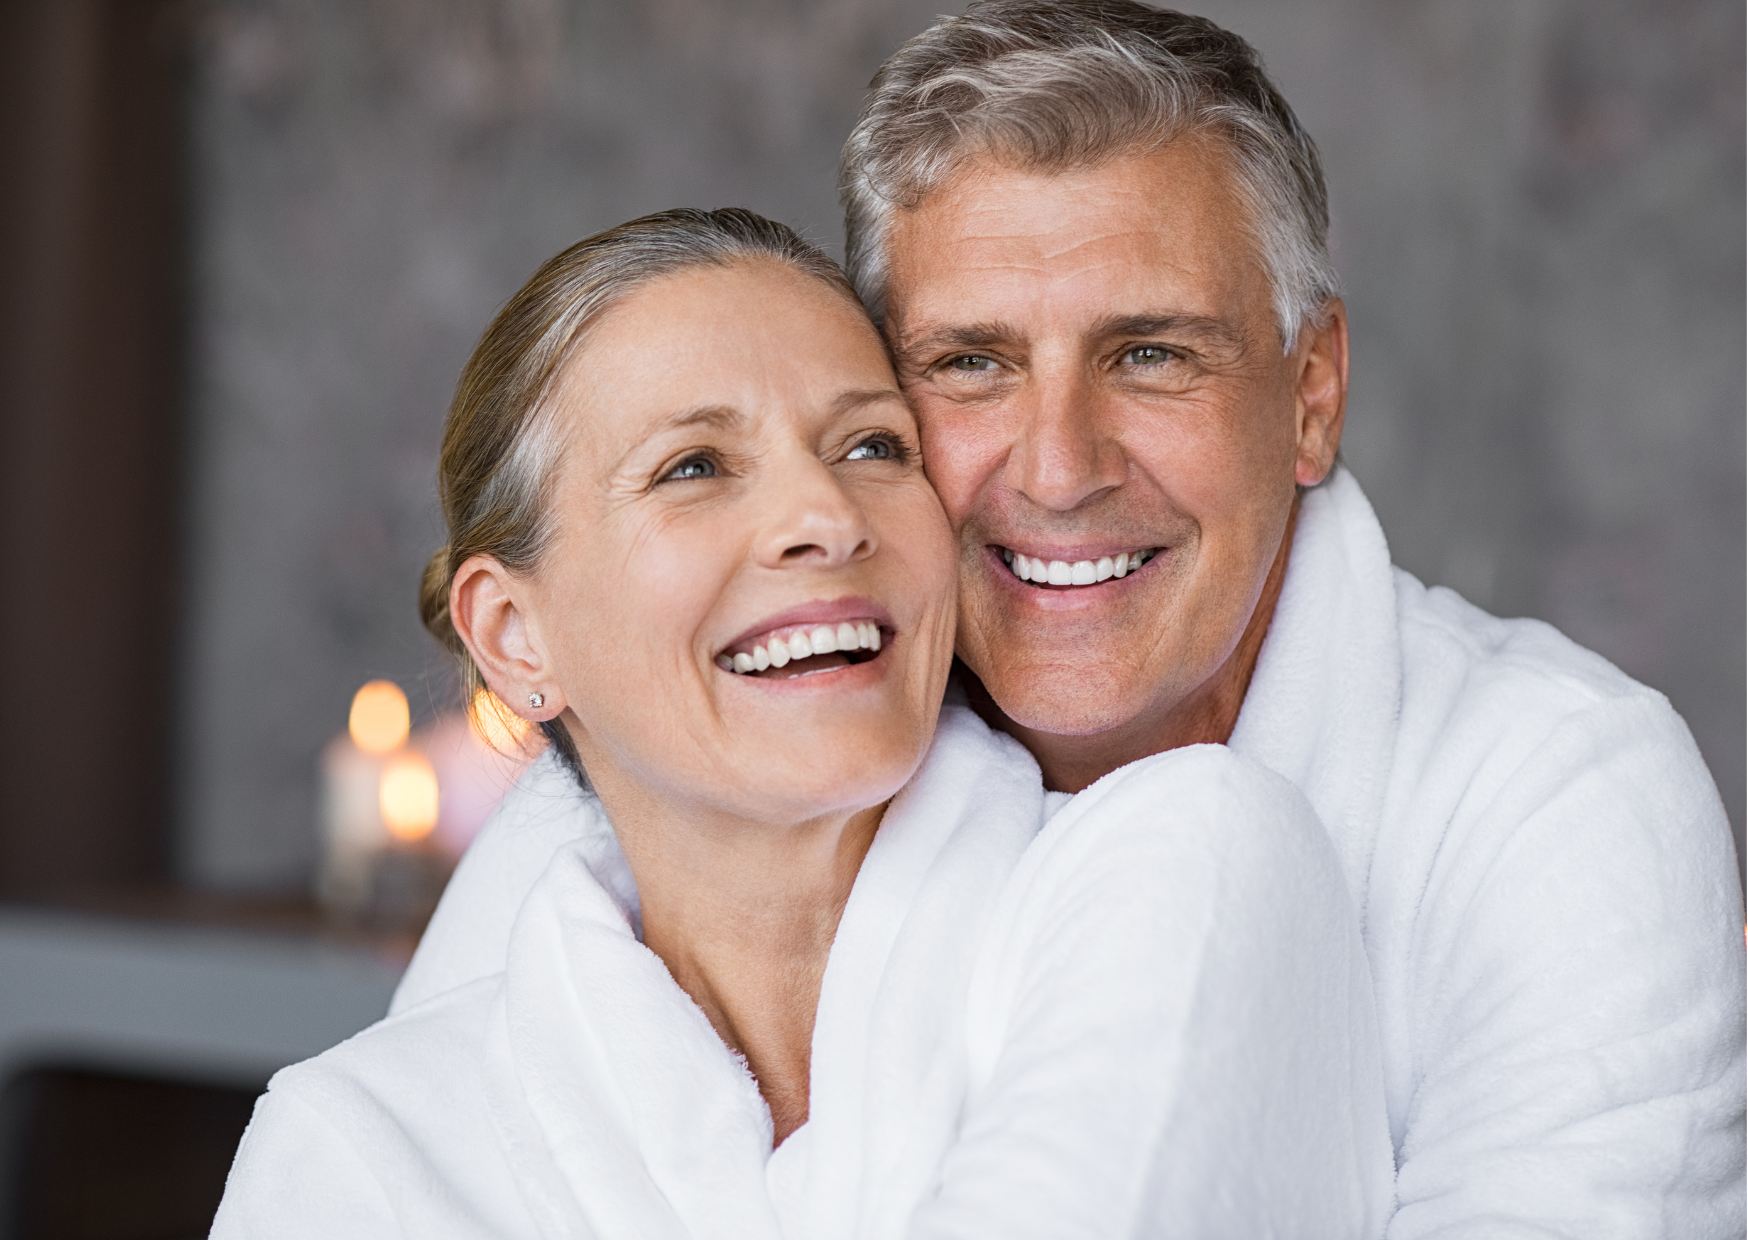 Em destaque, um casal de homem e mulher branca, ambos com cabelos claros e grisalhos, estão vestindo roupões da cor branca e abraçados e sorrindo.